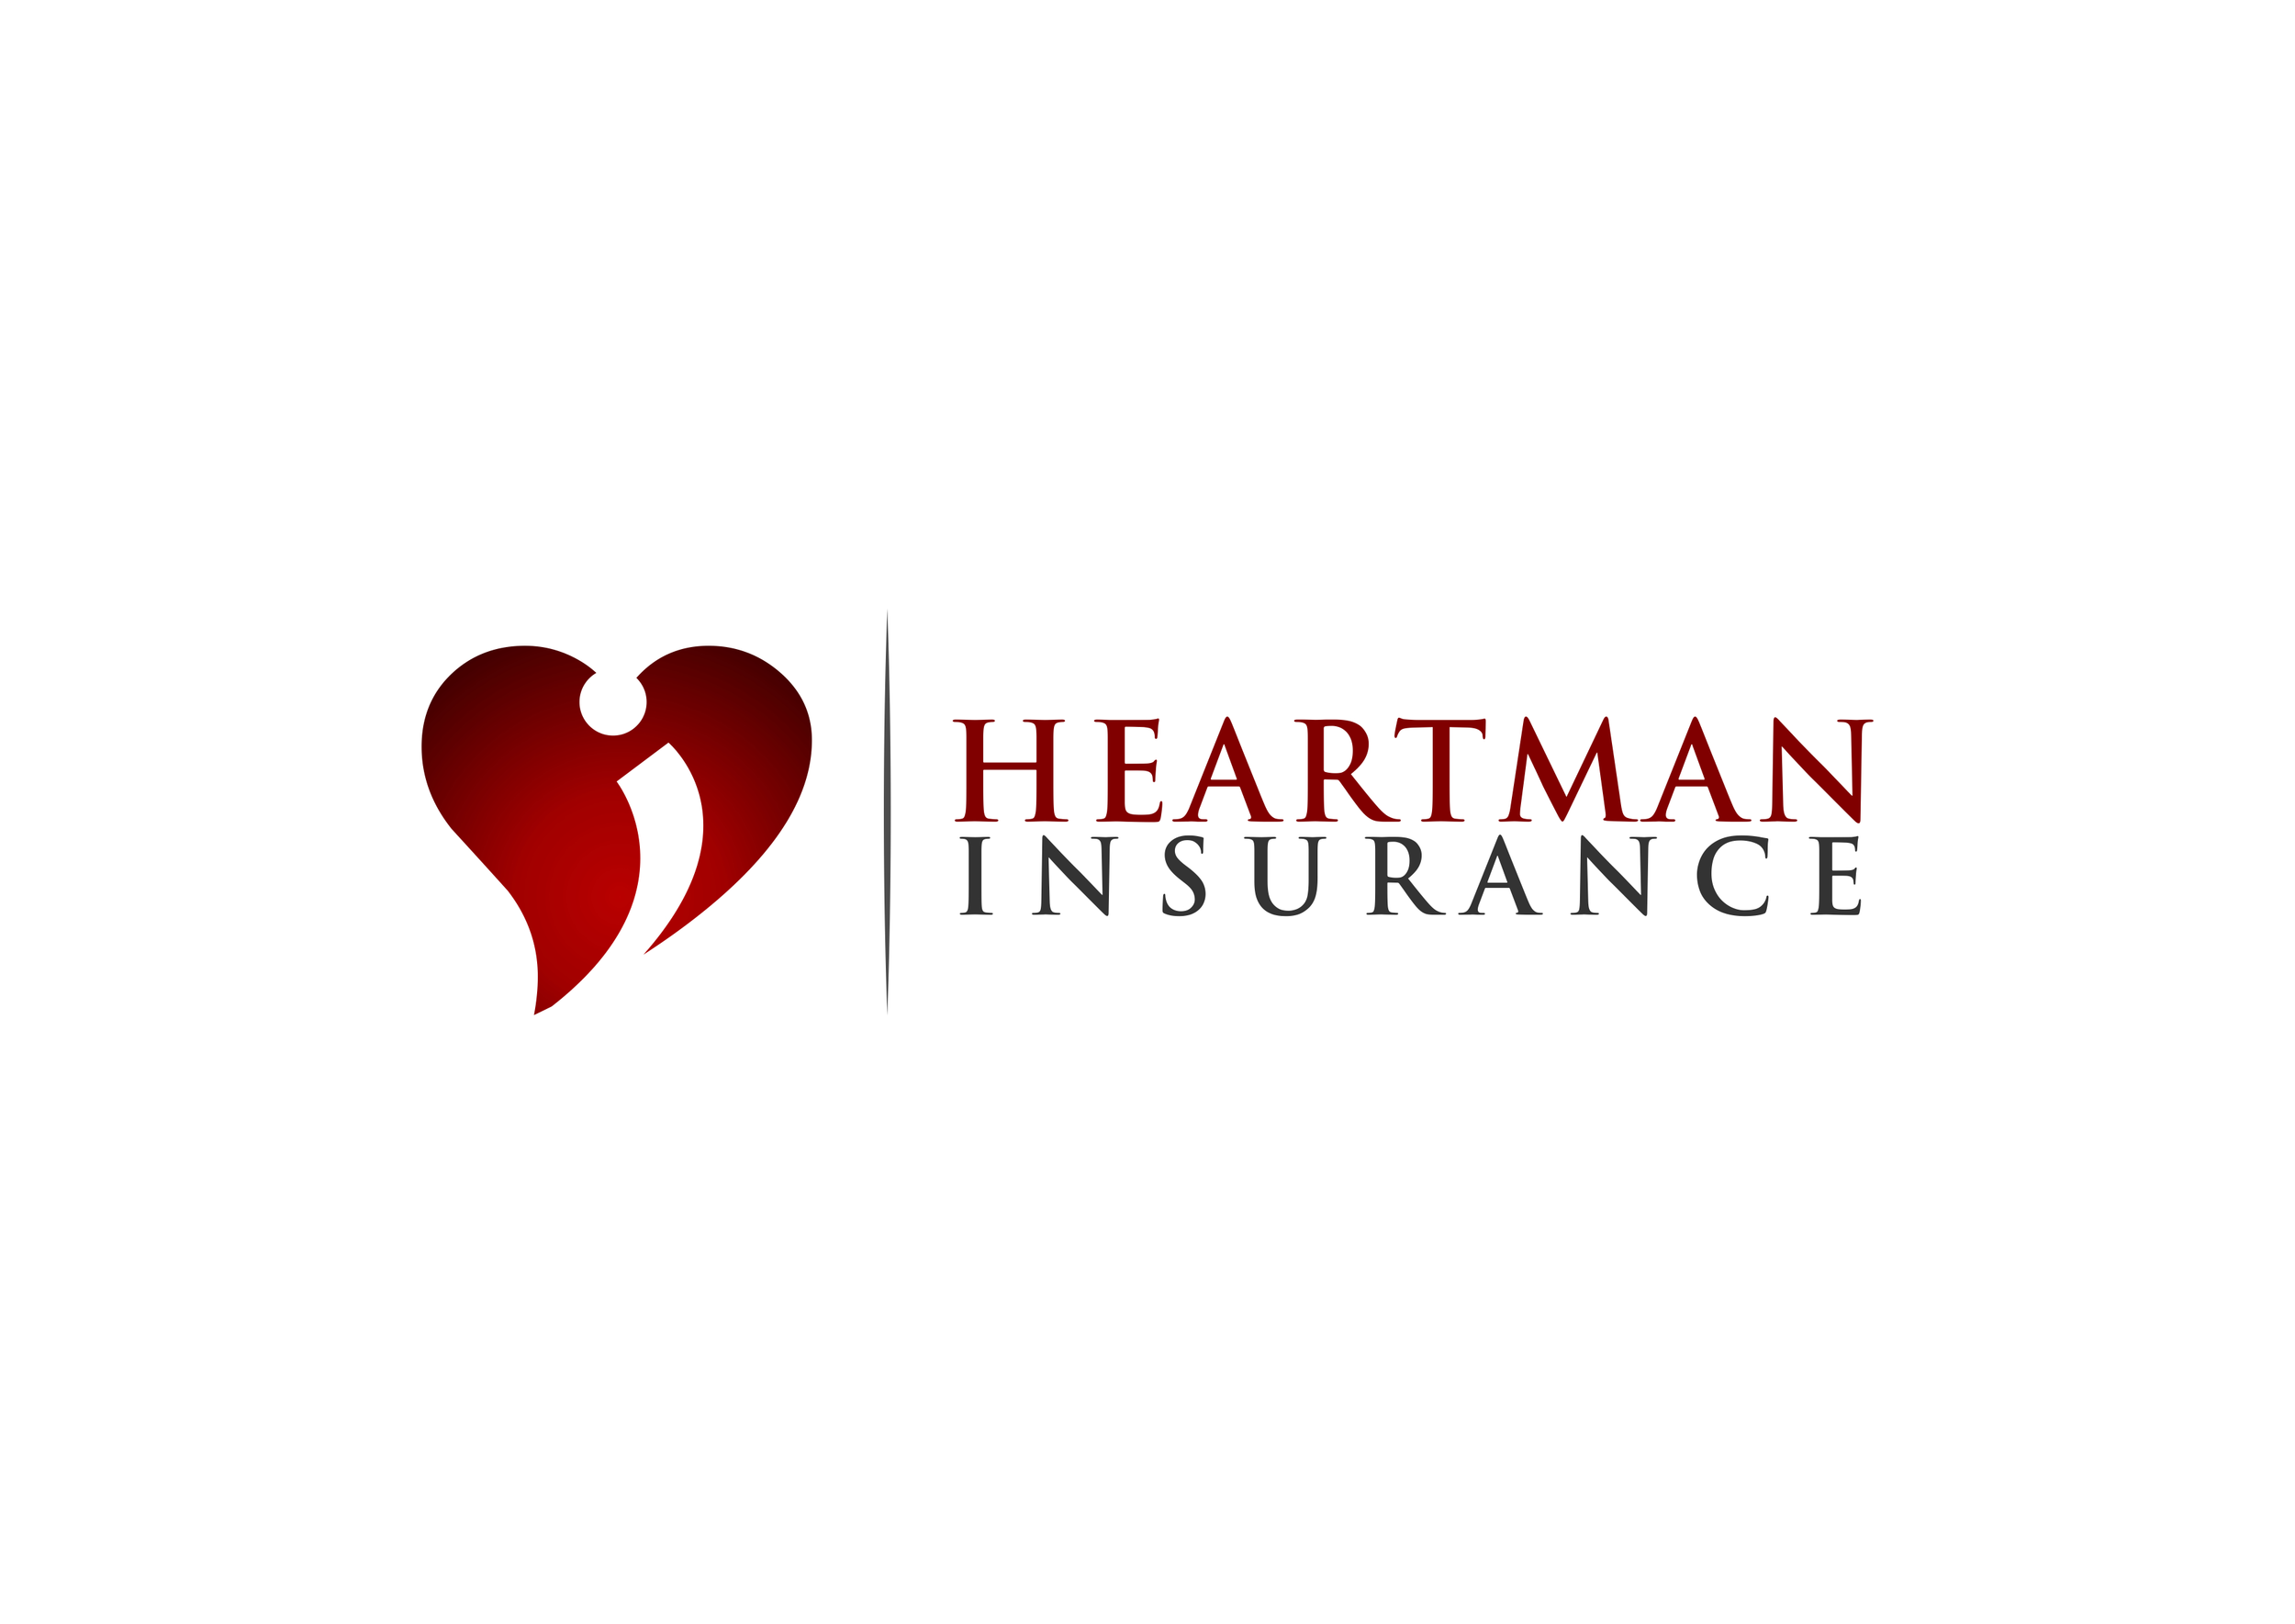 heartman_ins_logo.png